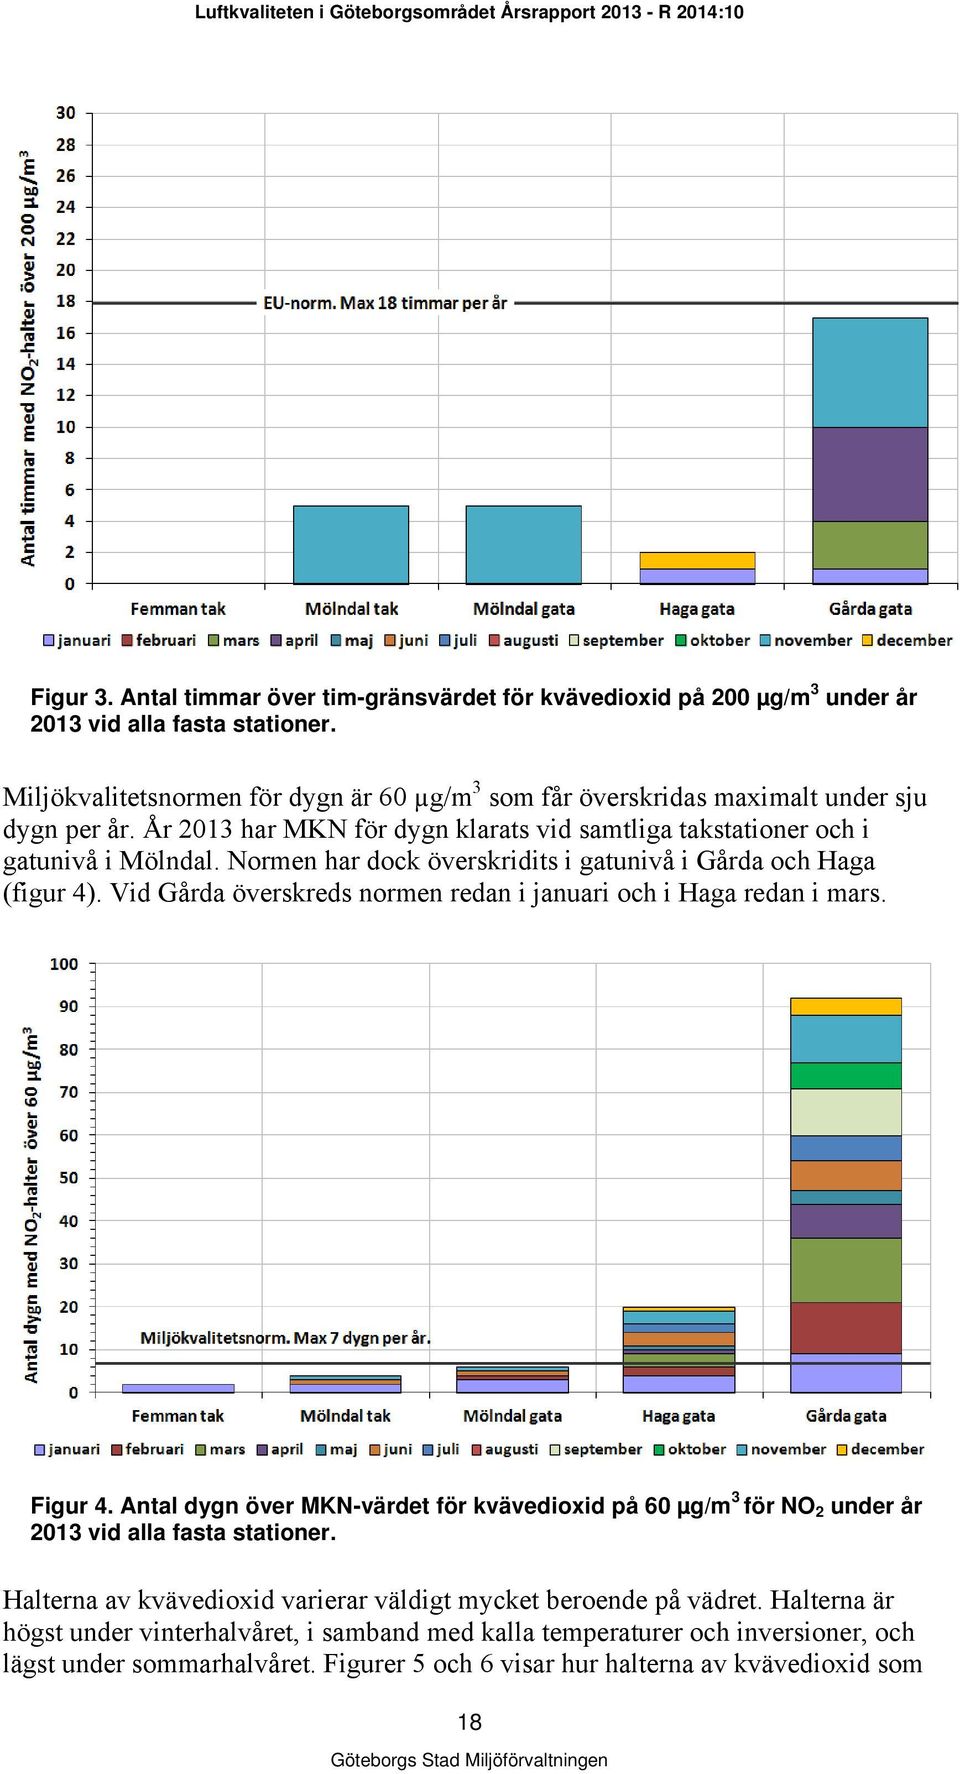 Normen har dock överskridits i gatunivå i Gårda och Haga (figur 4). Vid Gårda överskreds normen redan i januari och i Haga redan i mars. Figur 4.